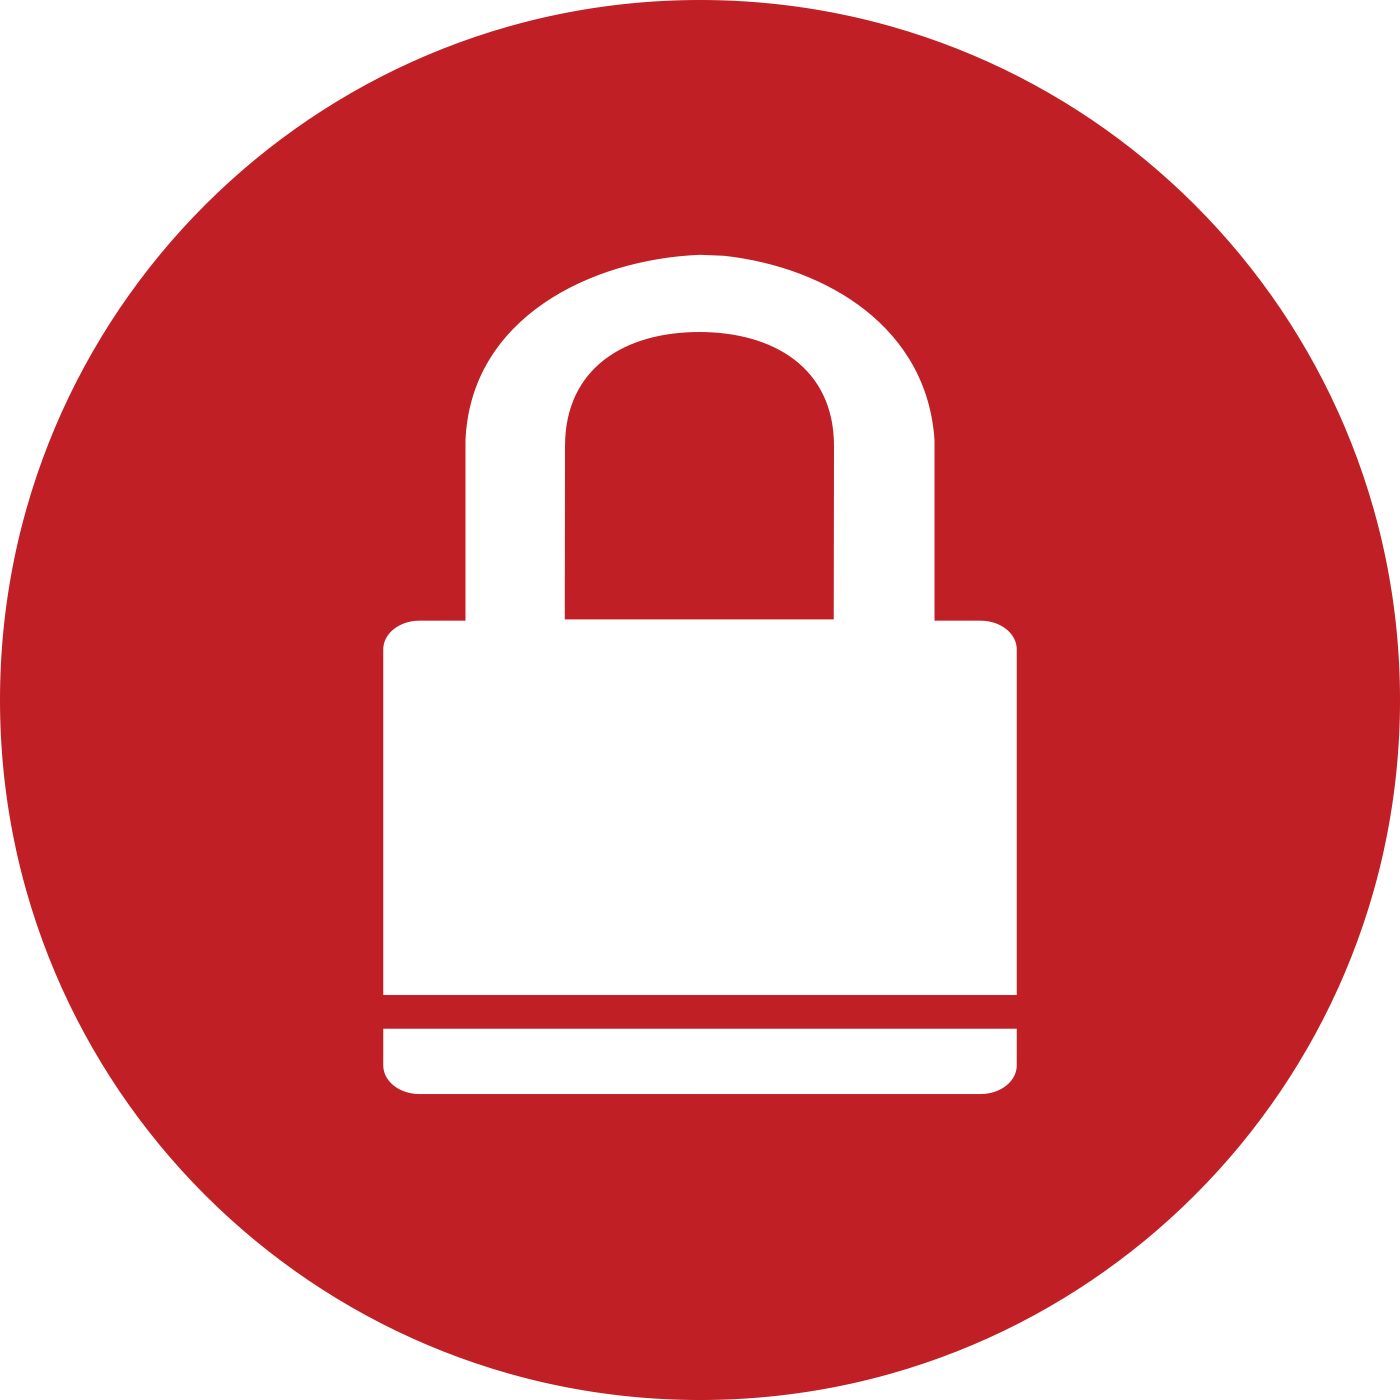 A padlock indicating lockdown status